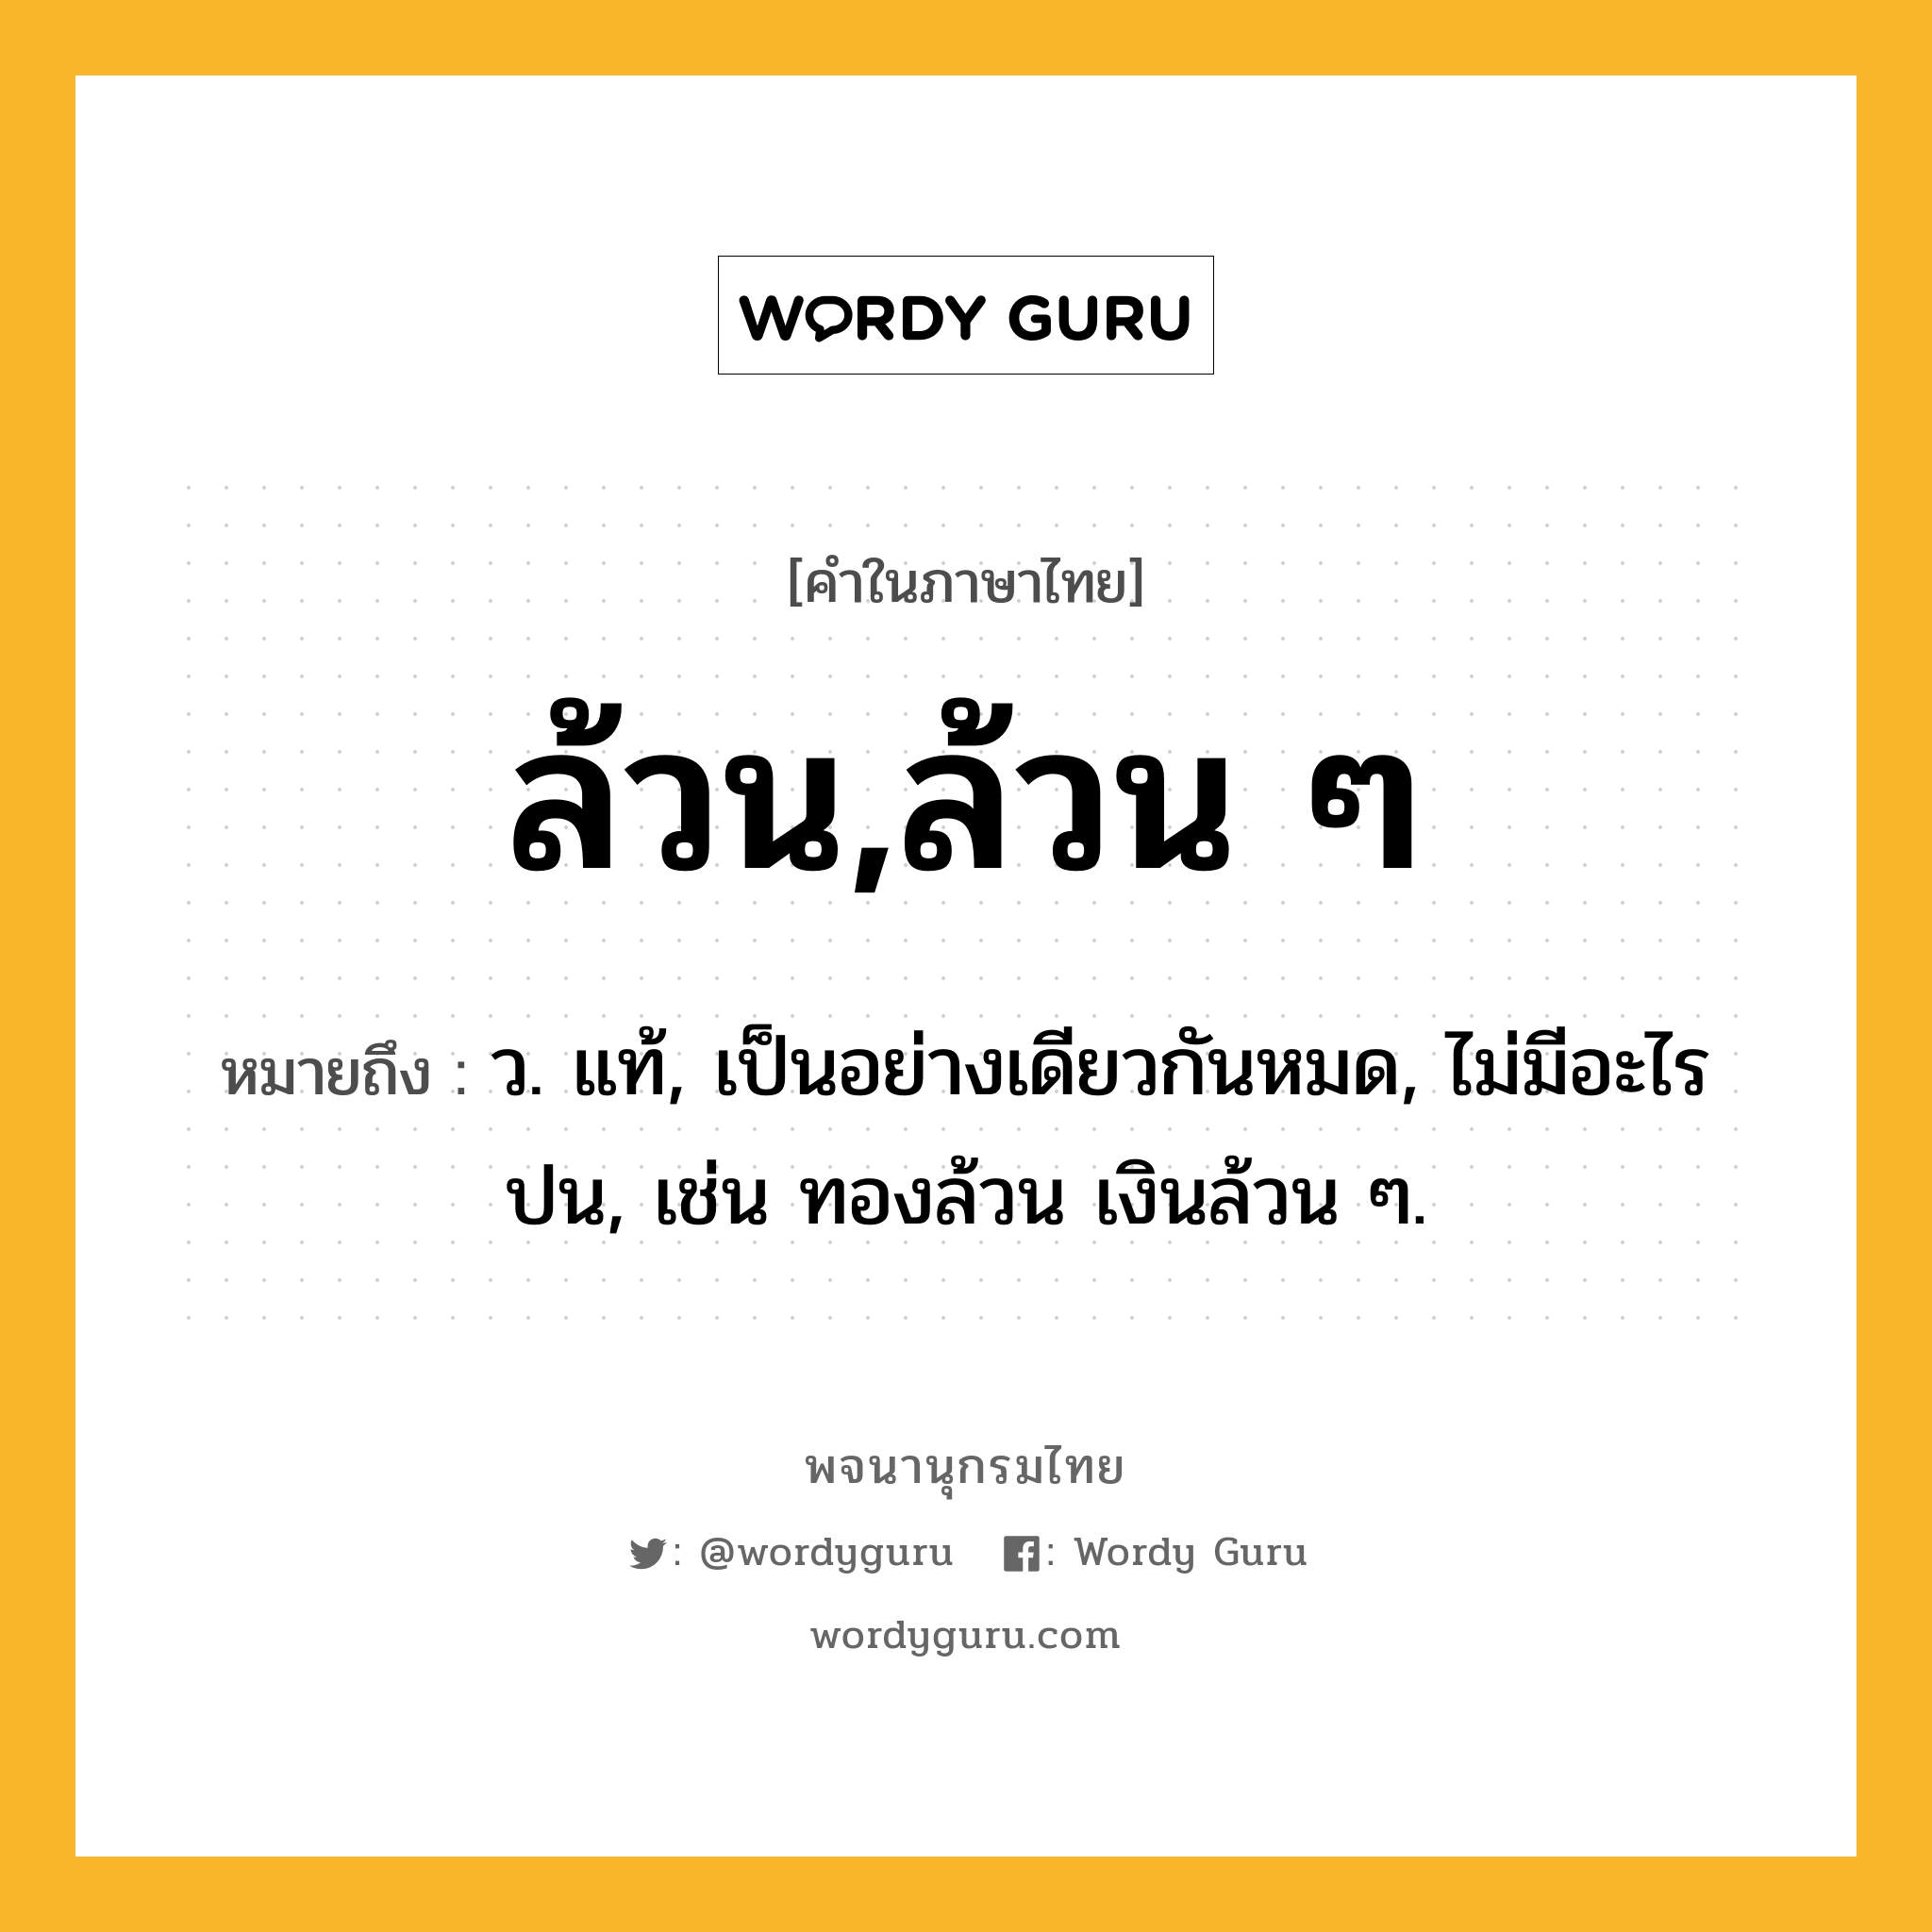 ล้วน,ล้วน ๆ หมายถึงอะไร?, คำในภาษาไทย ล้วน,ล้วน ๆ หมายถึง ว. แท้, เป็นอย่างเดียวกันหมด, ไม่มีอะไรปน, เช่น ทองล้วน เงินล้วน ๆ.